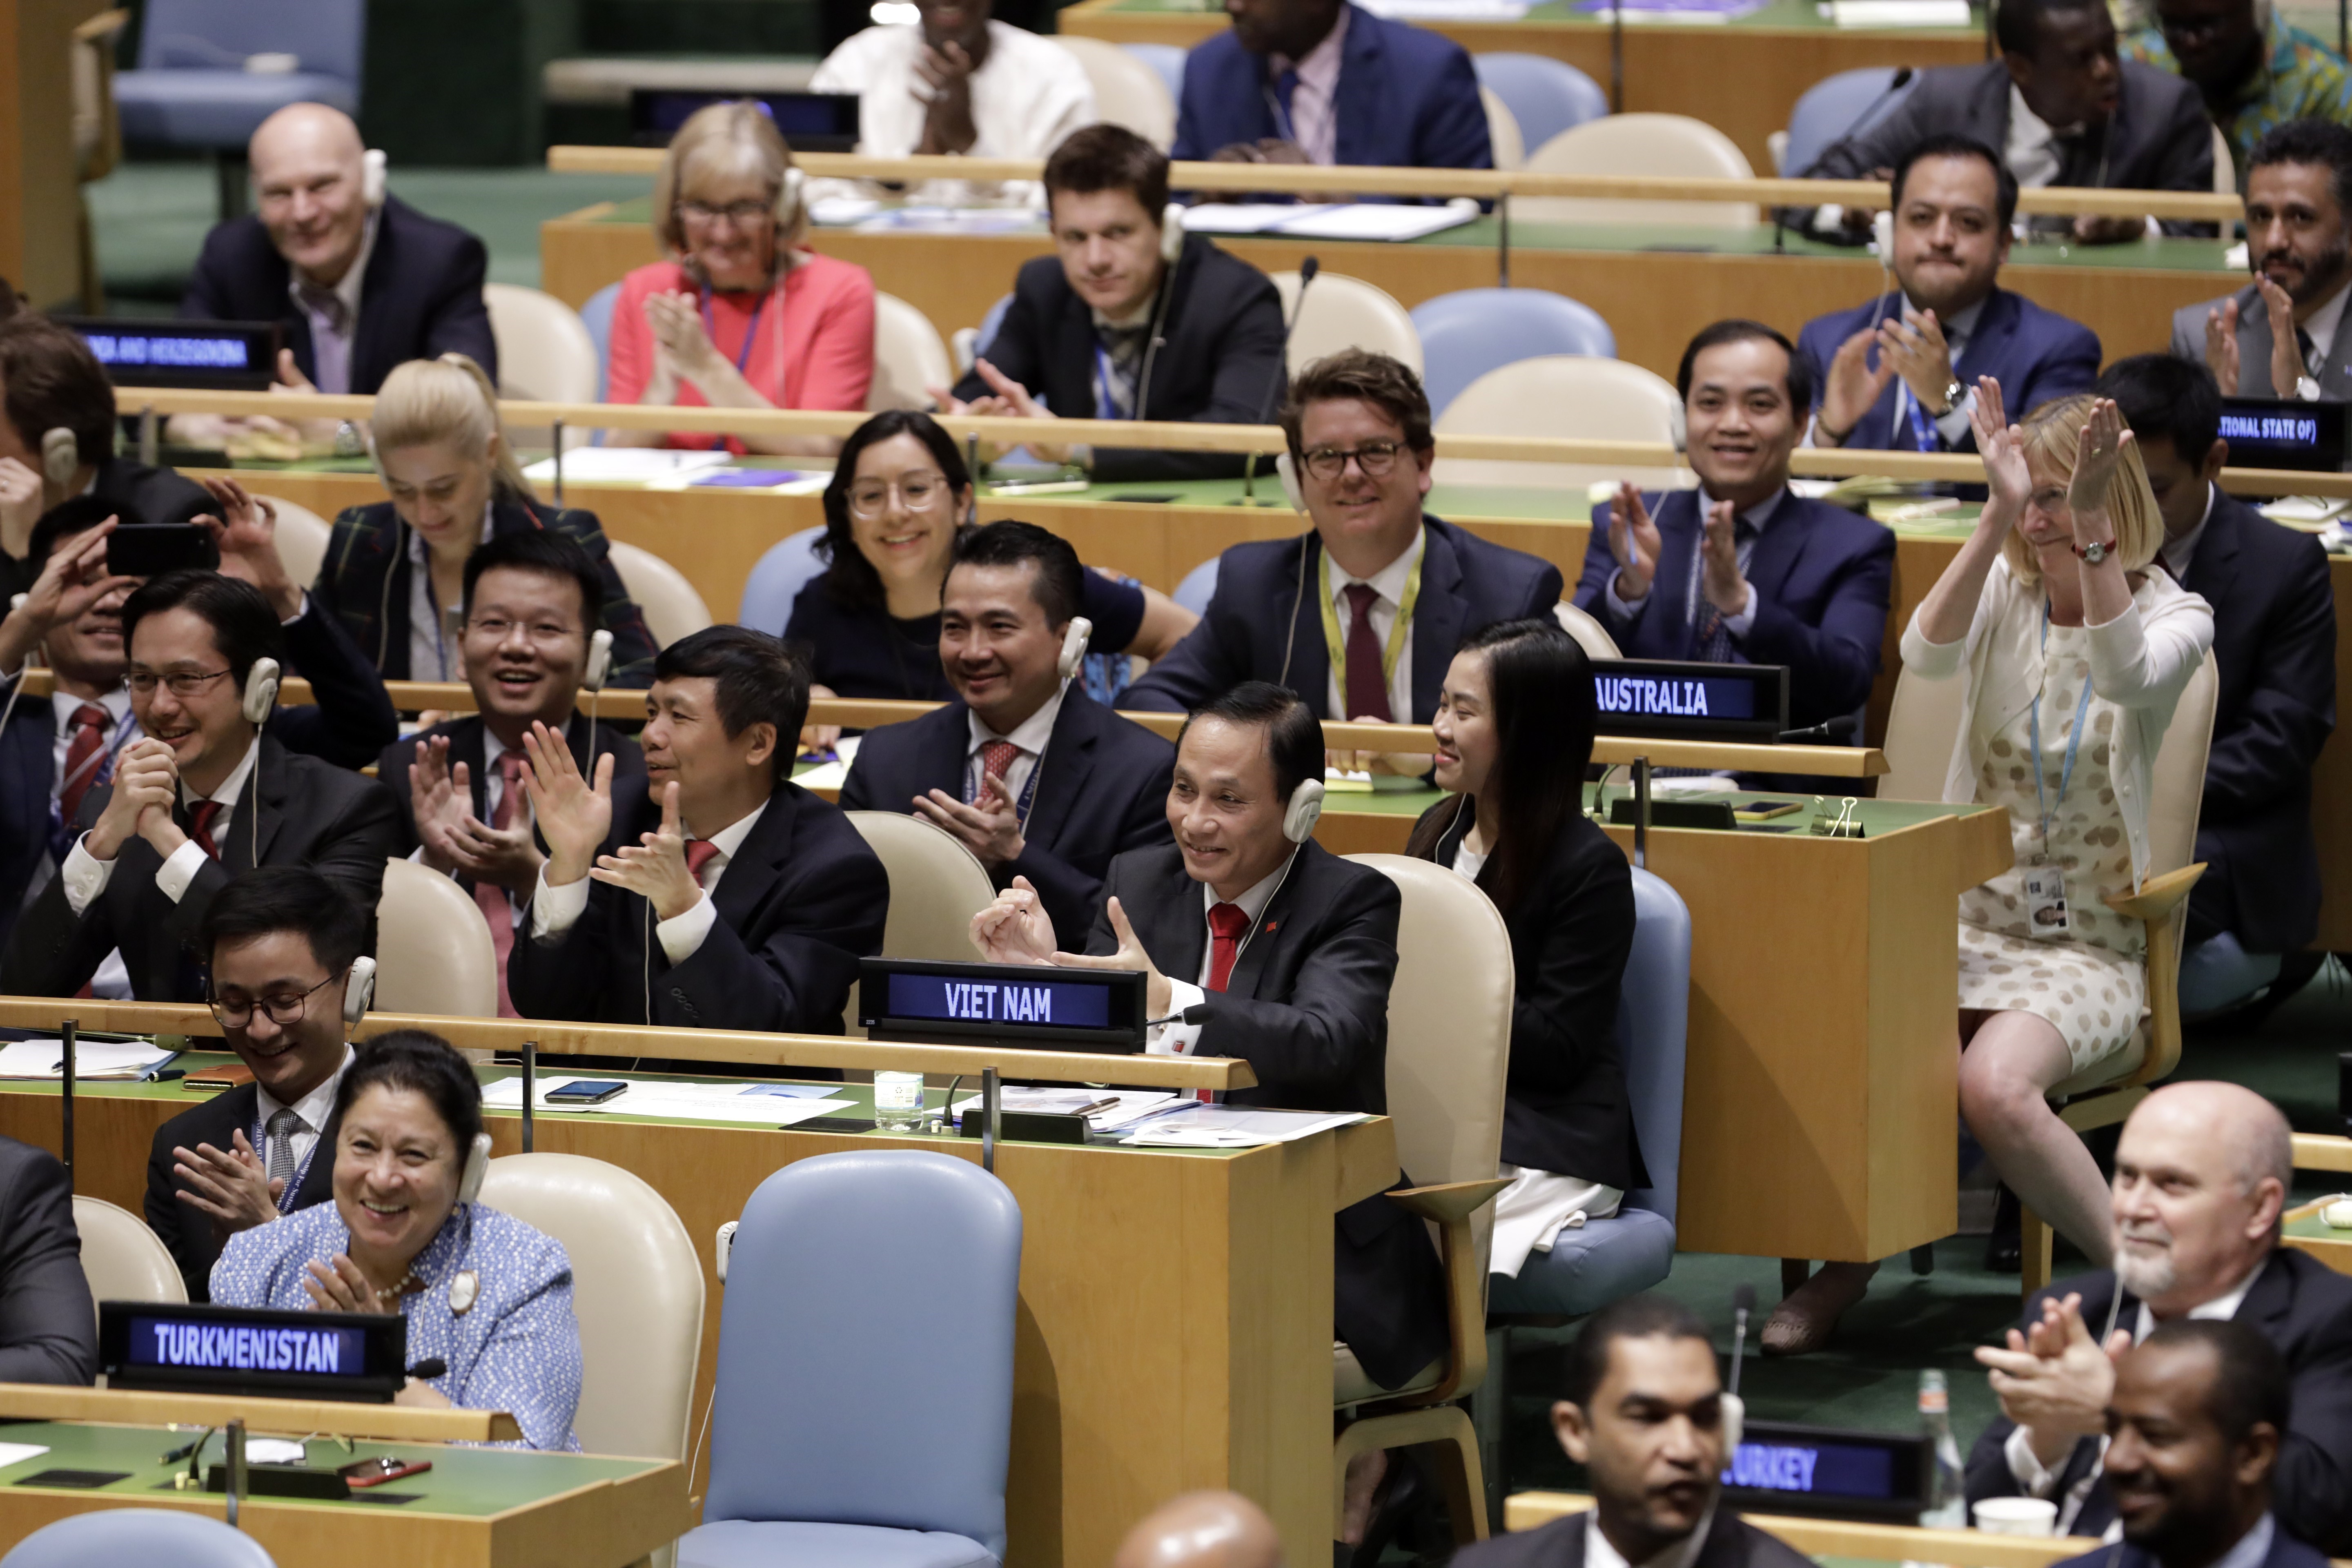 Đoàn Việt Nam do Thứ trưởng Bộ Ngoại giao Lê Hoài Trung (phải, hàng thứ 2, bên trái) dẫn đầu vui mừng sau khi kết quả bỏ phiếu cho thấy Việt Nam được bầu chọn là ủy viên không thường trực Hội đồng Bảo Liên hợp quốc nhiệm kỳ 2020-2021, tại New York, Mỹ ngày 7/6/2019. (Nguồn: THX/TTXVN)